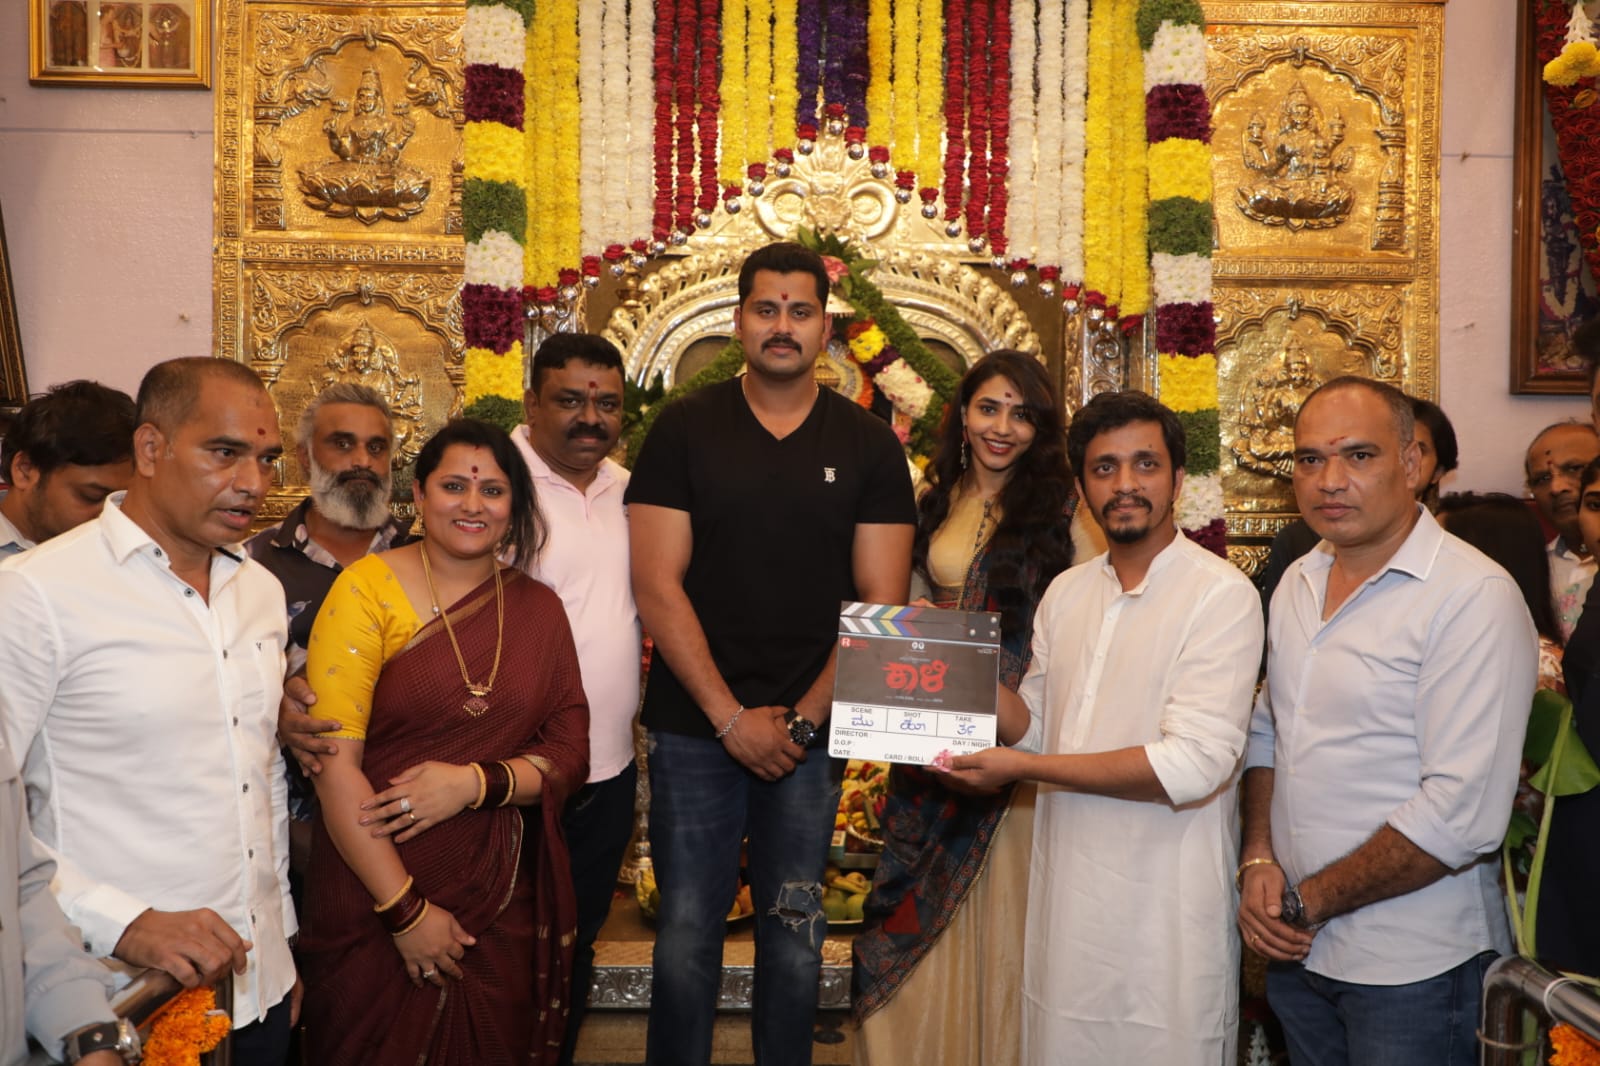  Muhurta of the film 'Kali' was held at Sri Bandi Mankalamma temple